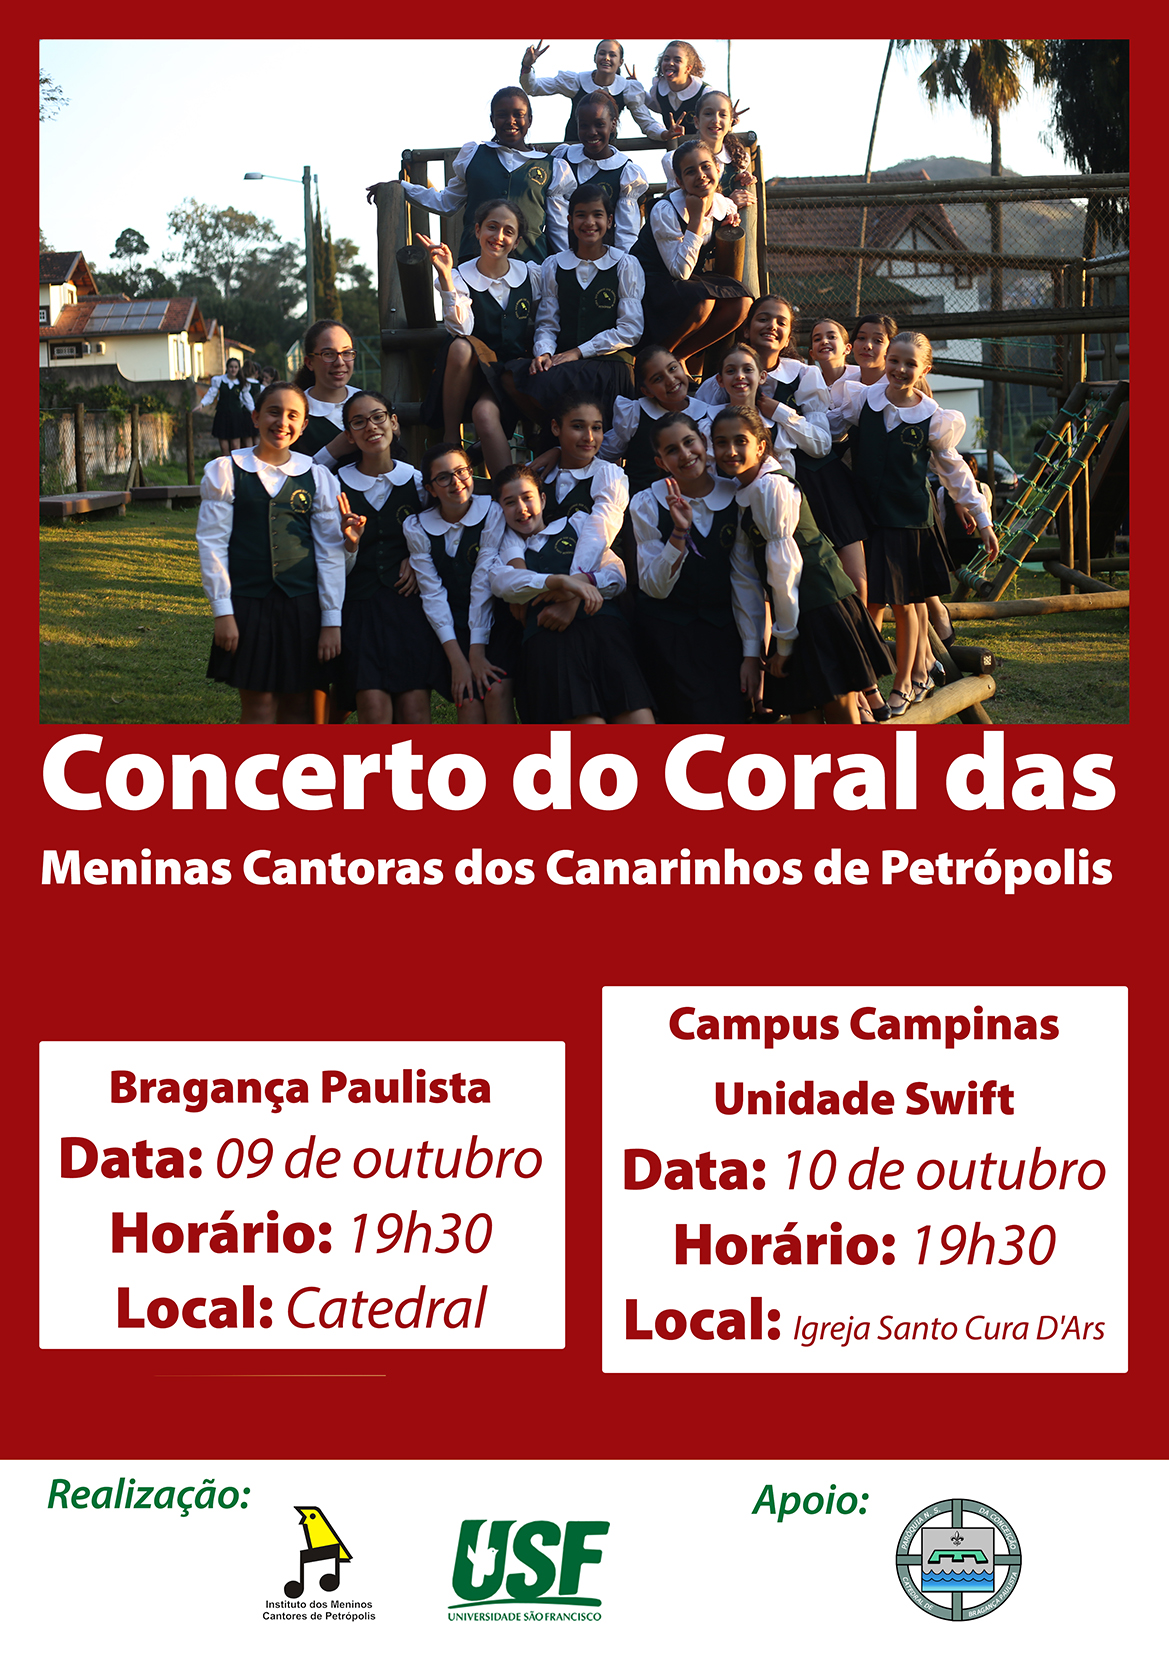 Concerto Coral das Meninas Cantoras dos Canarinhos de Petrópolis